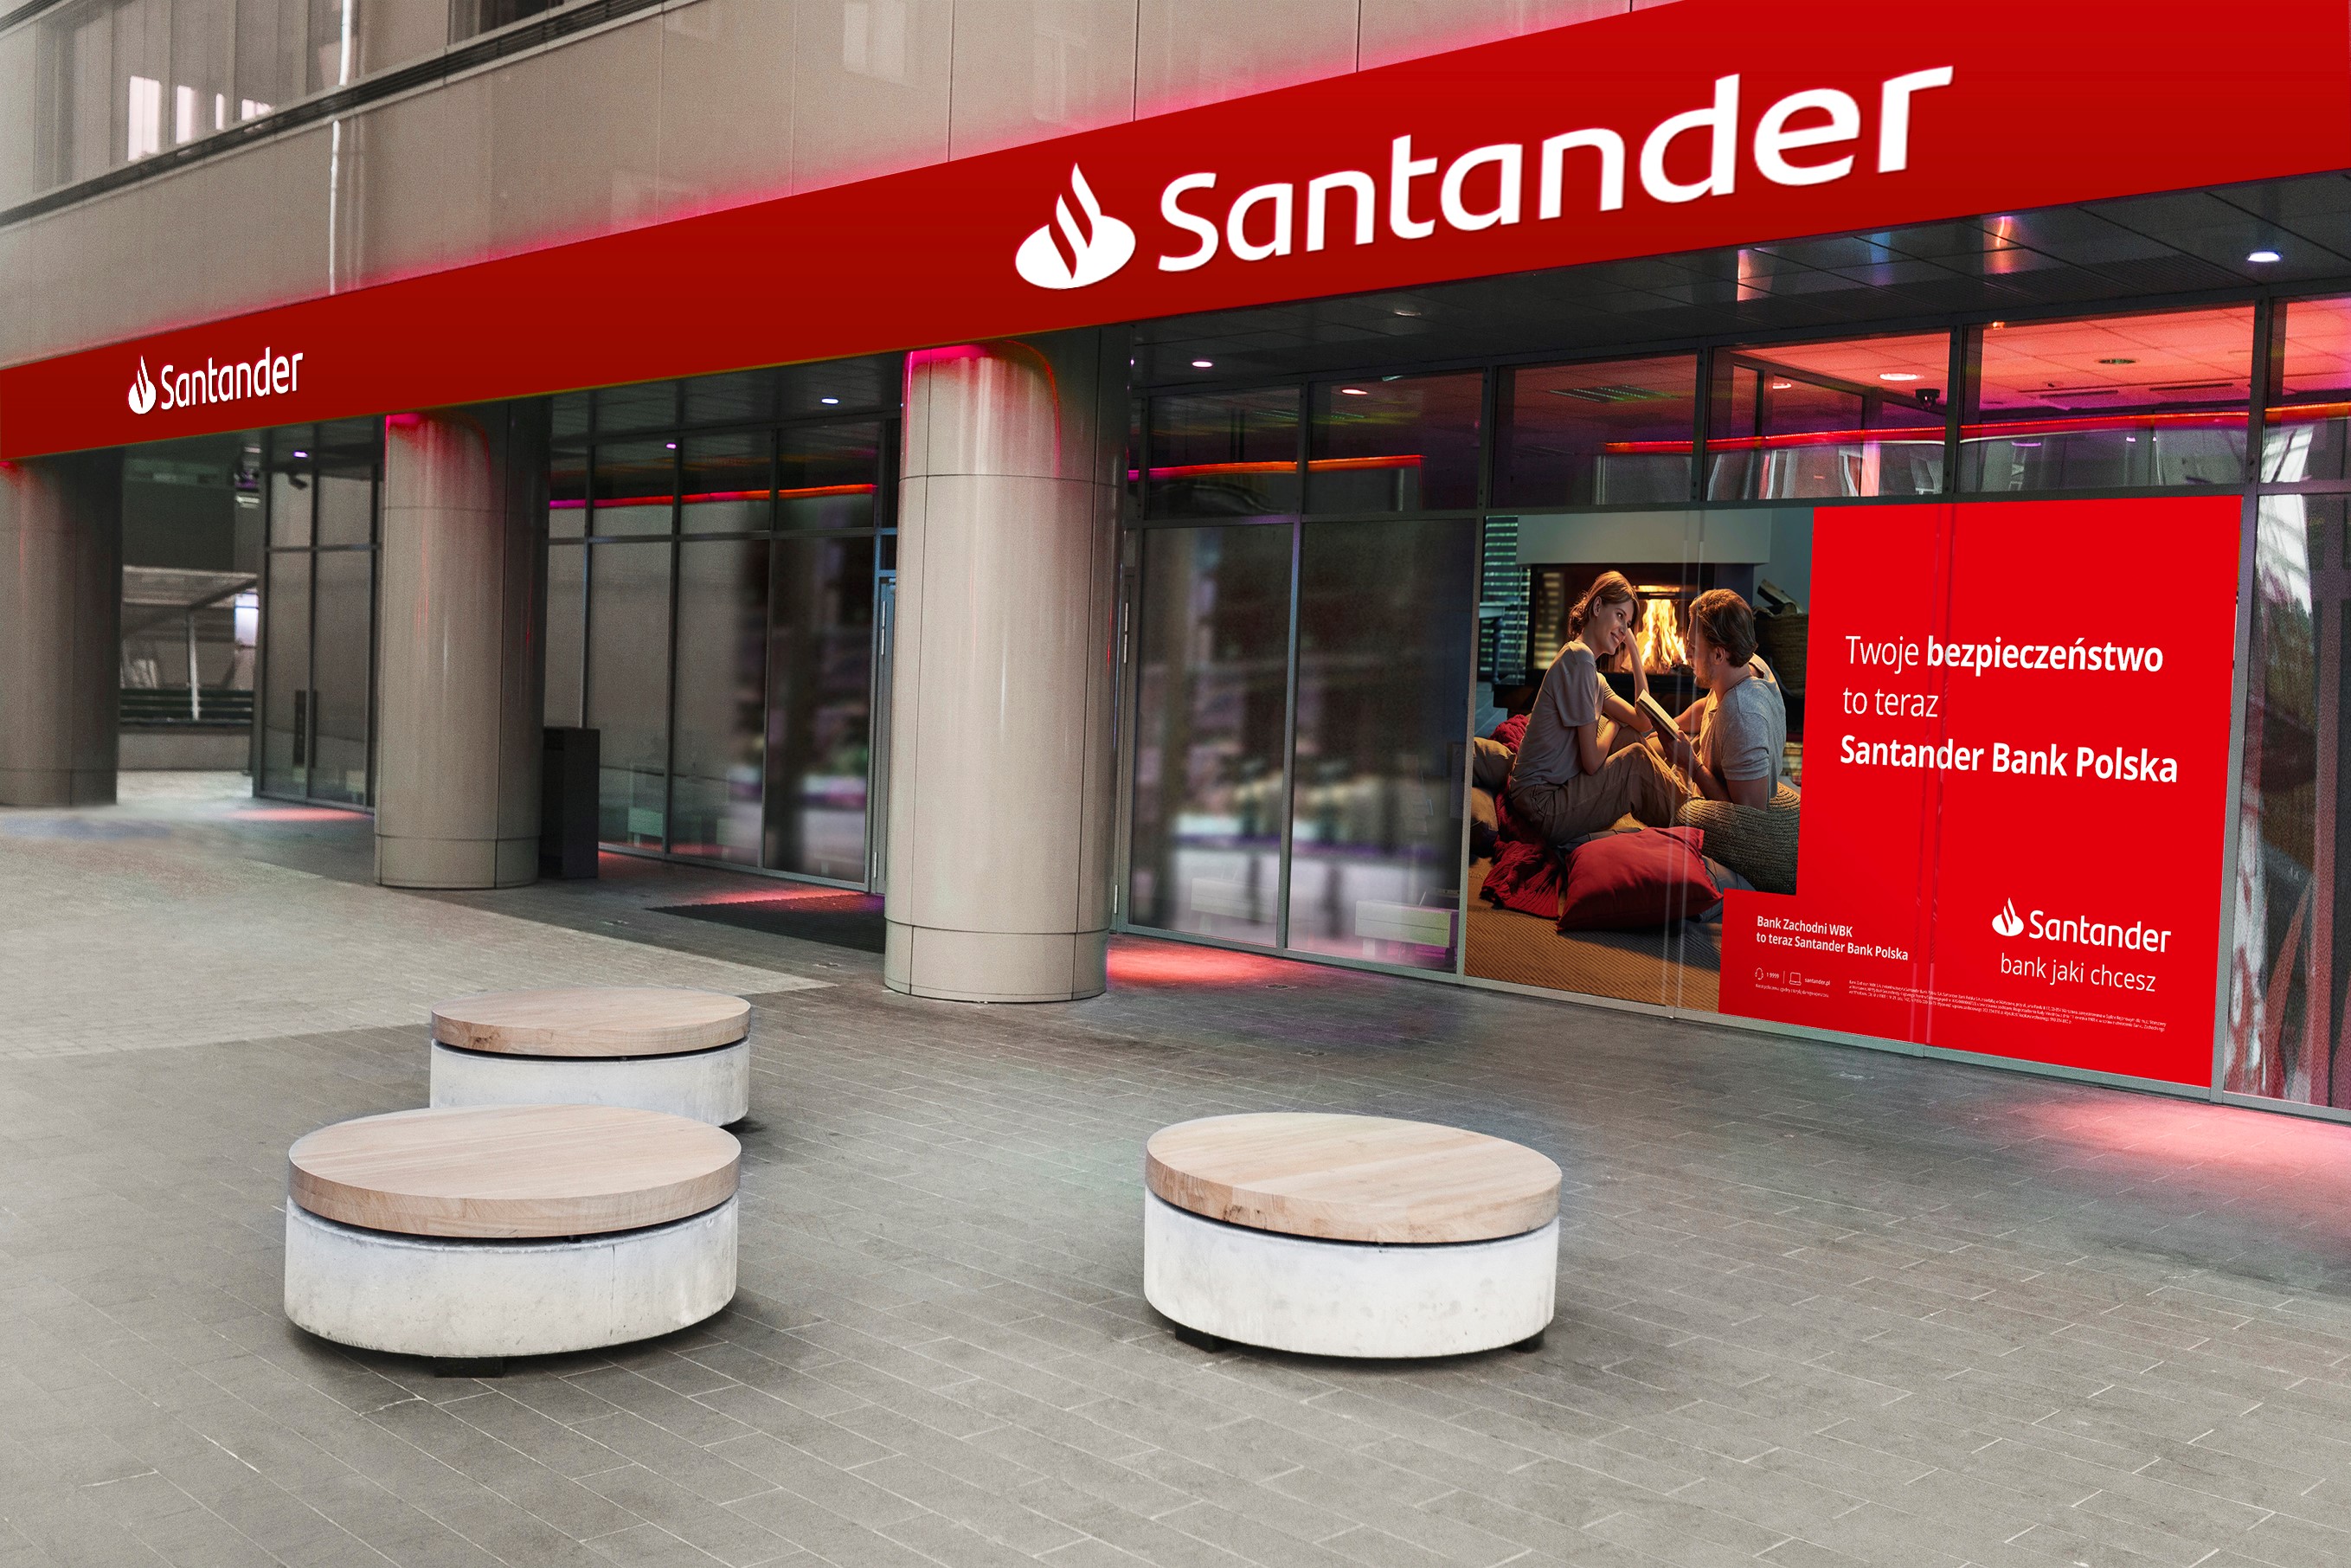 Santander Universidades i Fundacja Santander wystartowały z projektem edukacyjnym „Start w studia z Santander” dla tegorocznych maturzystów